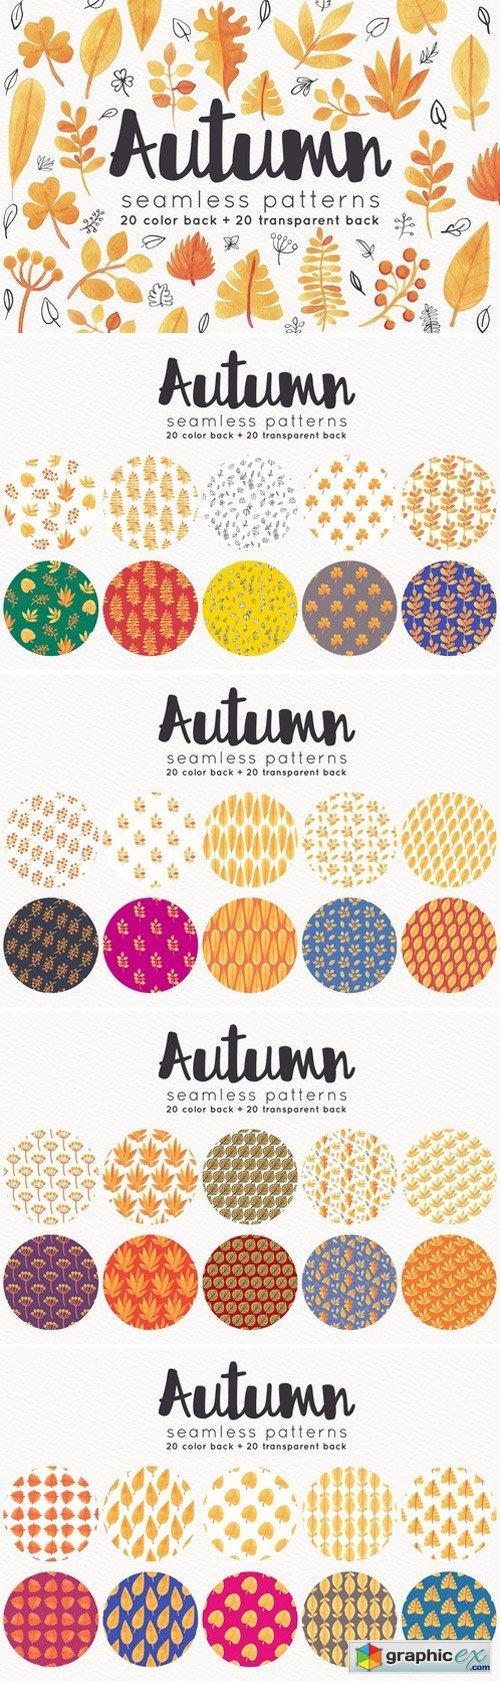 Autumn seamless patterns set